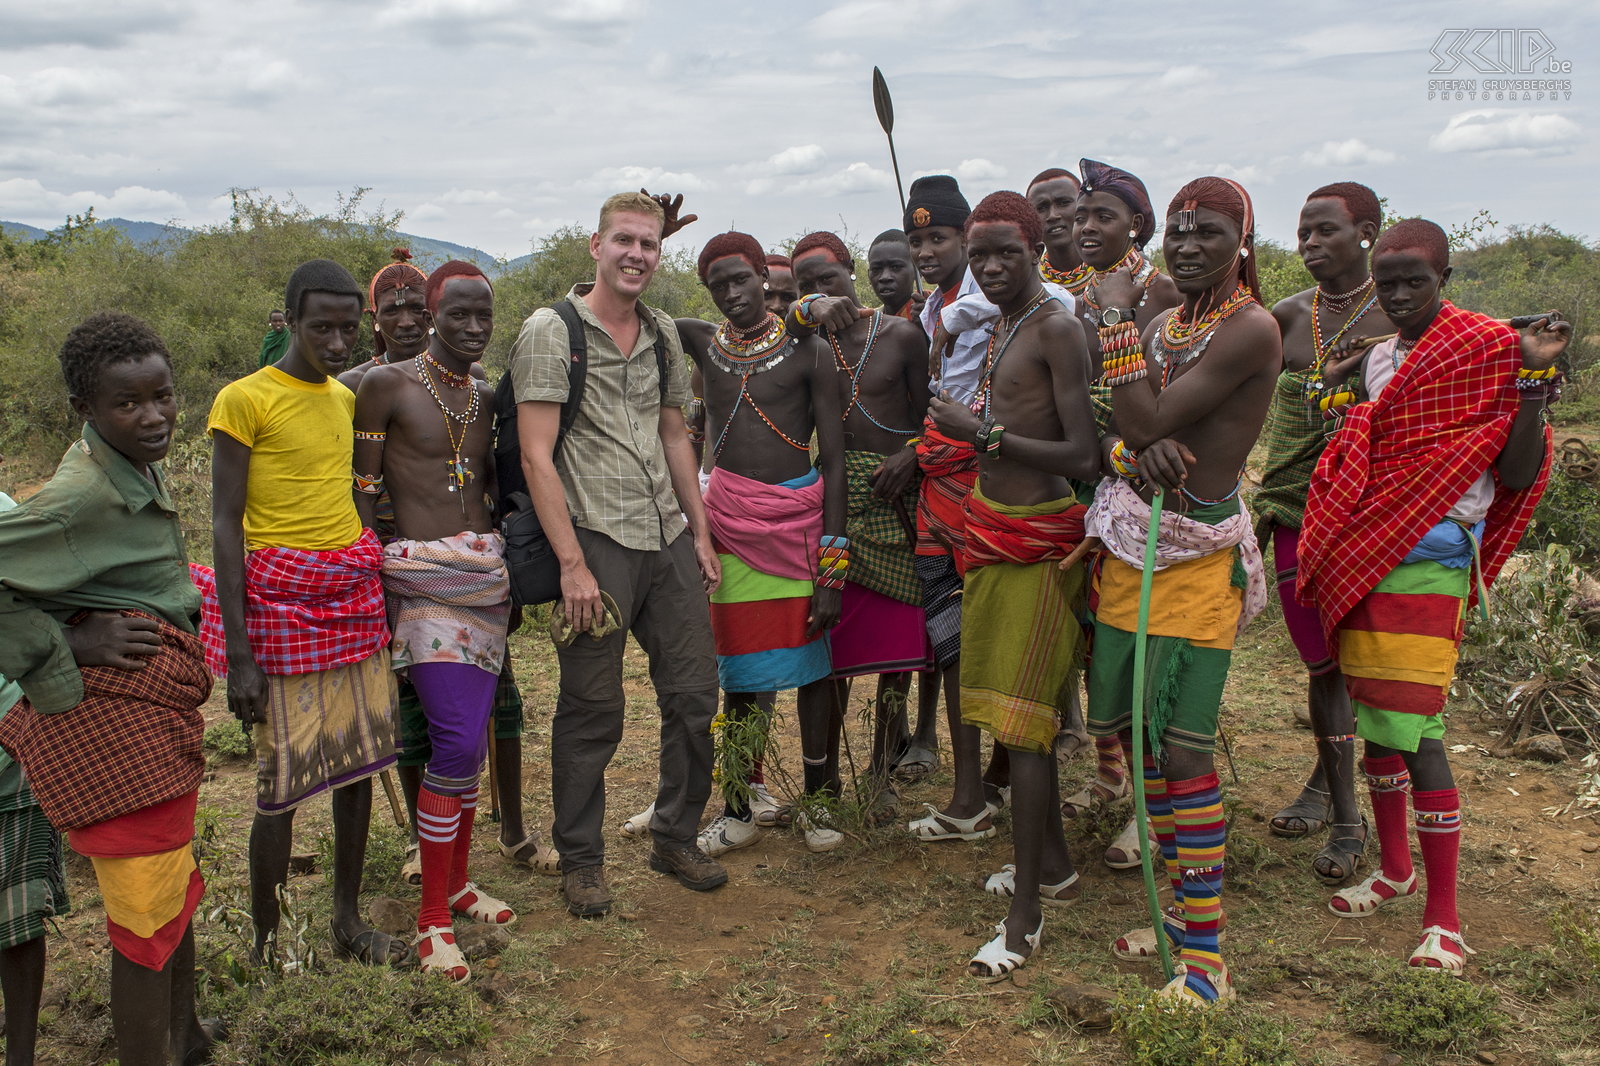 Kisima - Samburu lmuget - Morans en Stefan Ikzelf tussen een groep jonge Samburu morans. Ze waren zeer vriendelijk en ook wel nieuwsgierig en het was een fascinerende ervaring om de vele aspecten van hun ceremonies, tradities en cultuur te leren kennen. Als fotograaf was het boeiende en wondermooie dag. Stefan Cruysberghs